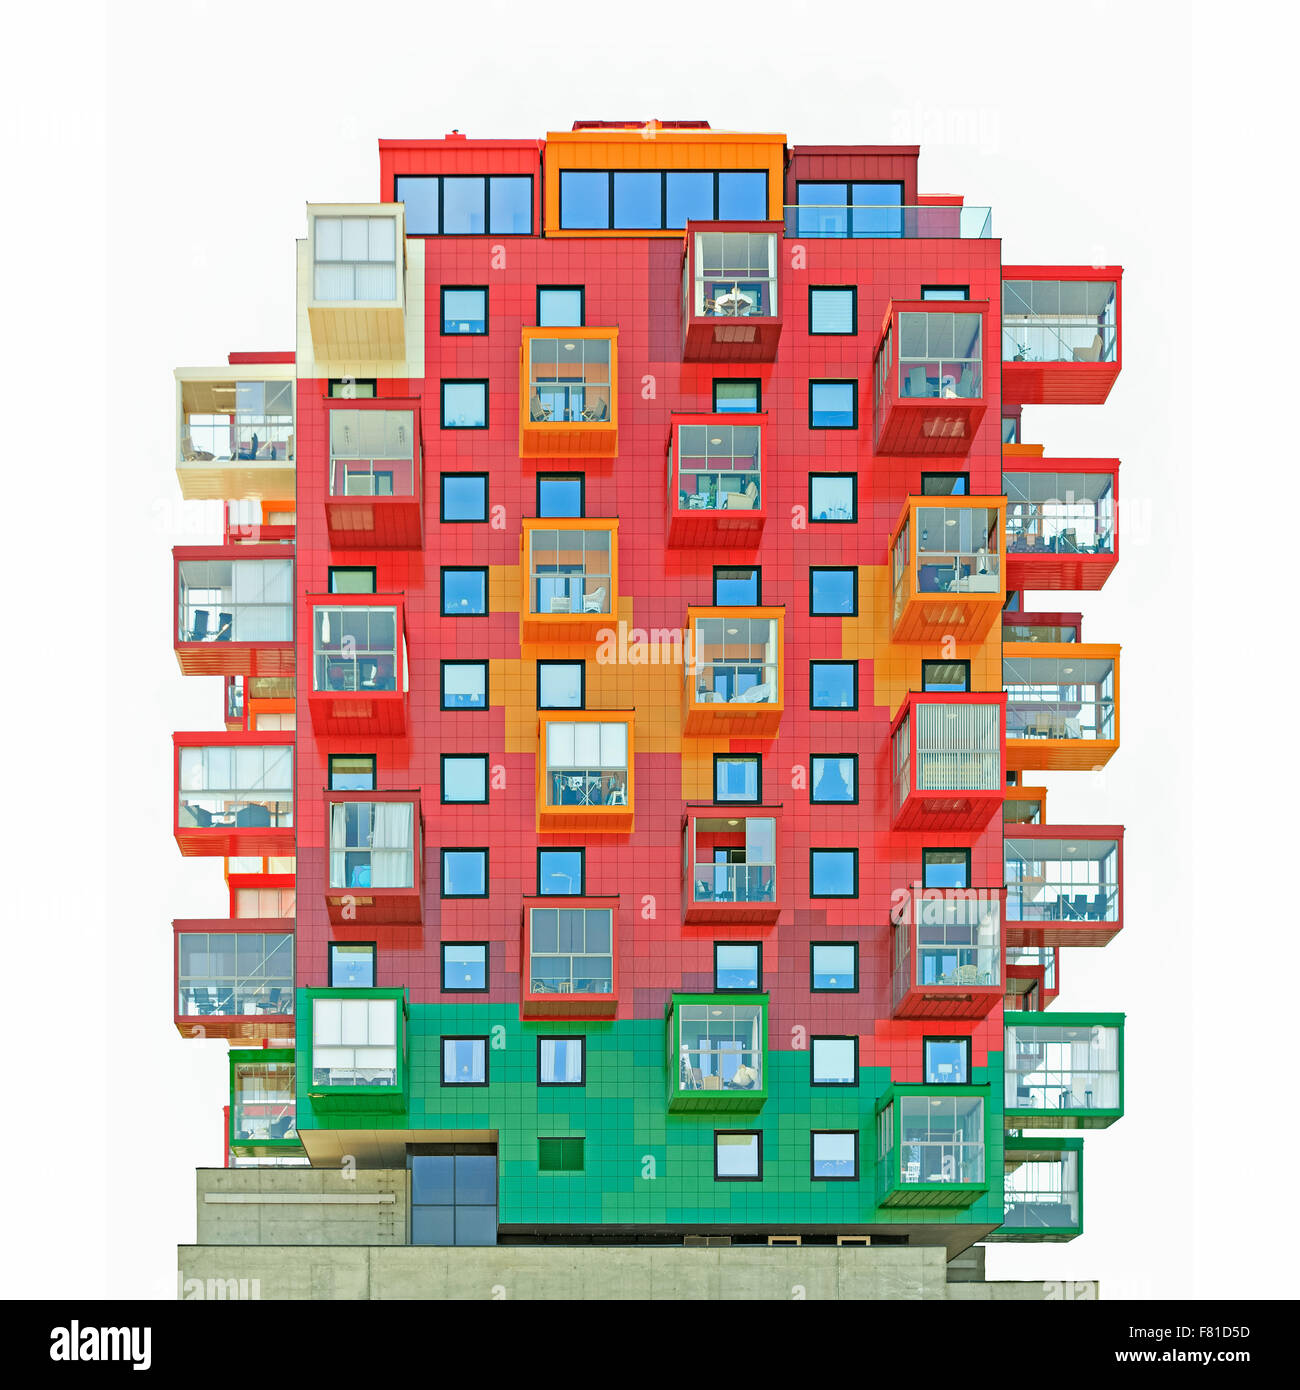 Tour résidentielle colorés, Ting 1, avec balcons et façades colorées, Gert Wingårdh détail, architecte, Örnsköldsvik Banque D'Images